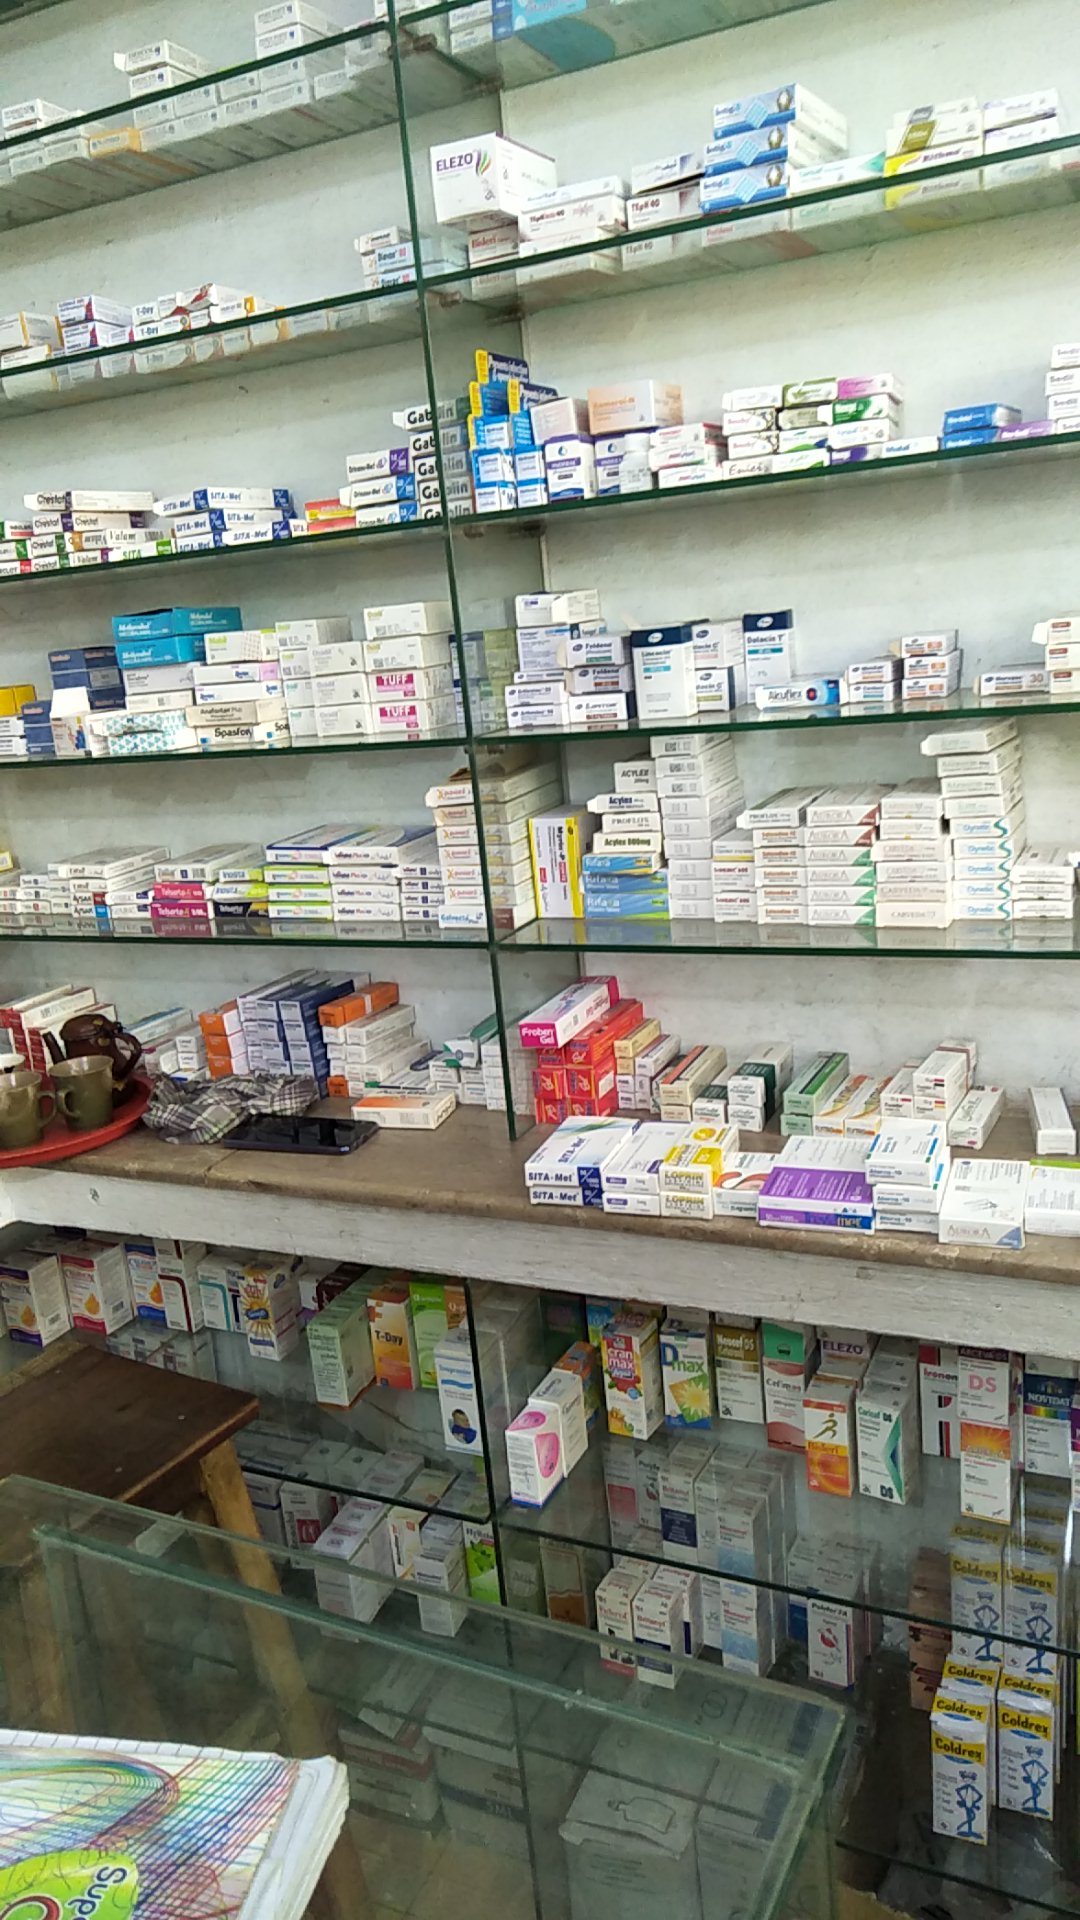 Al Hameed Pharmacy